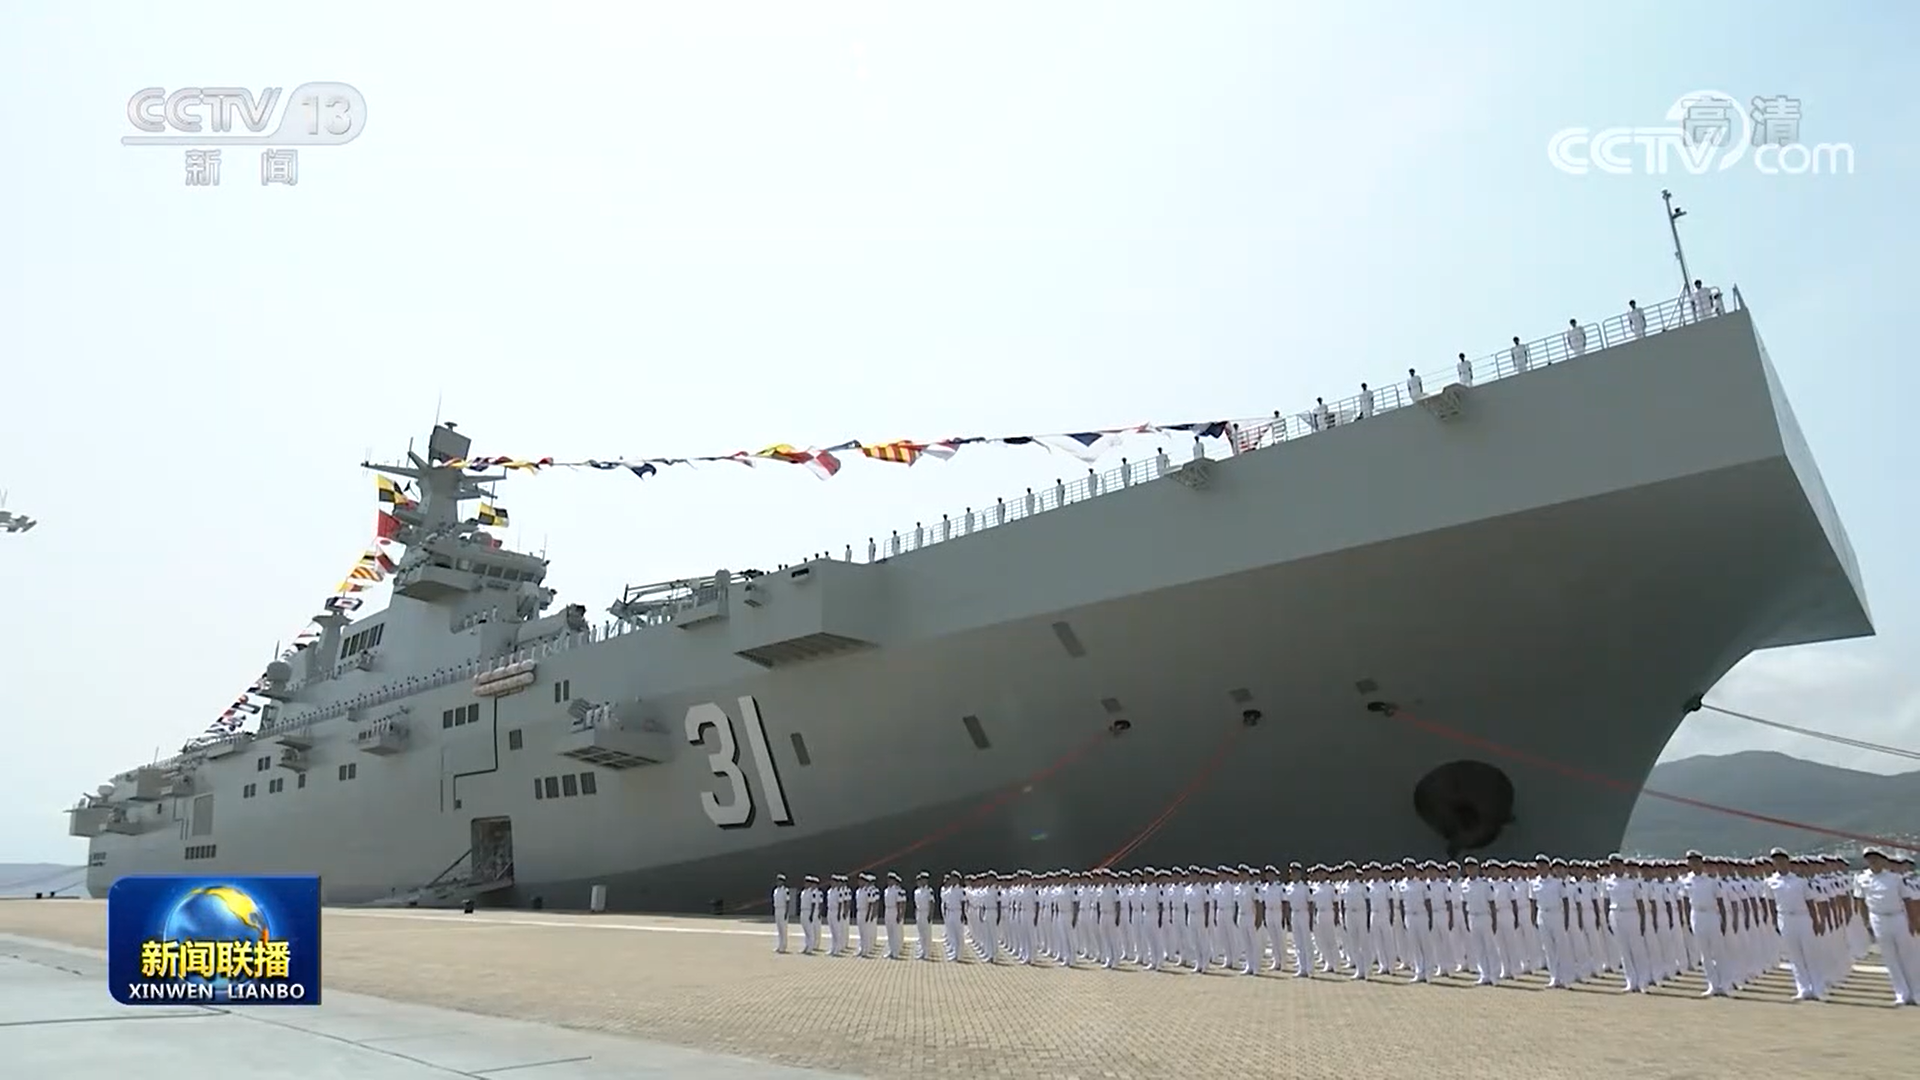 白咲花 的想法: 中国075型两栖攻击舰首舰「海南」号(lhd… 